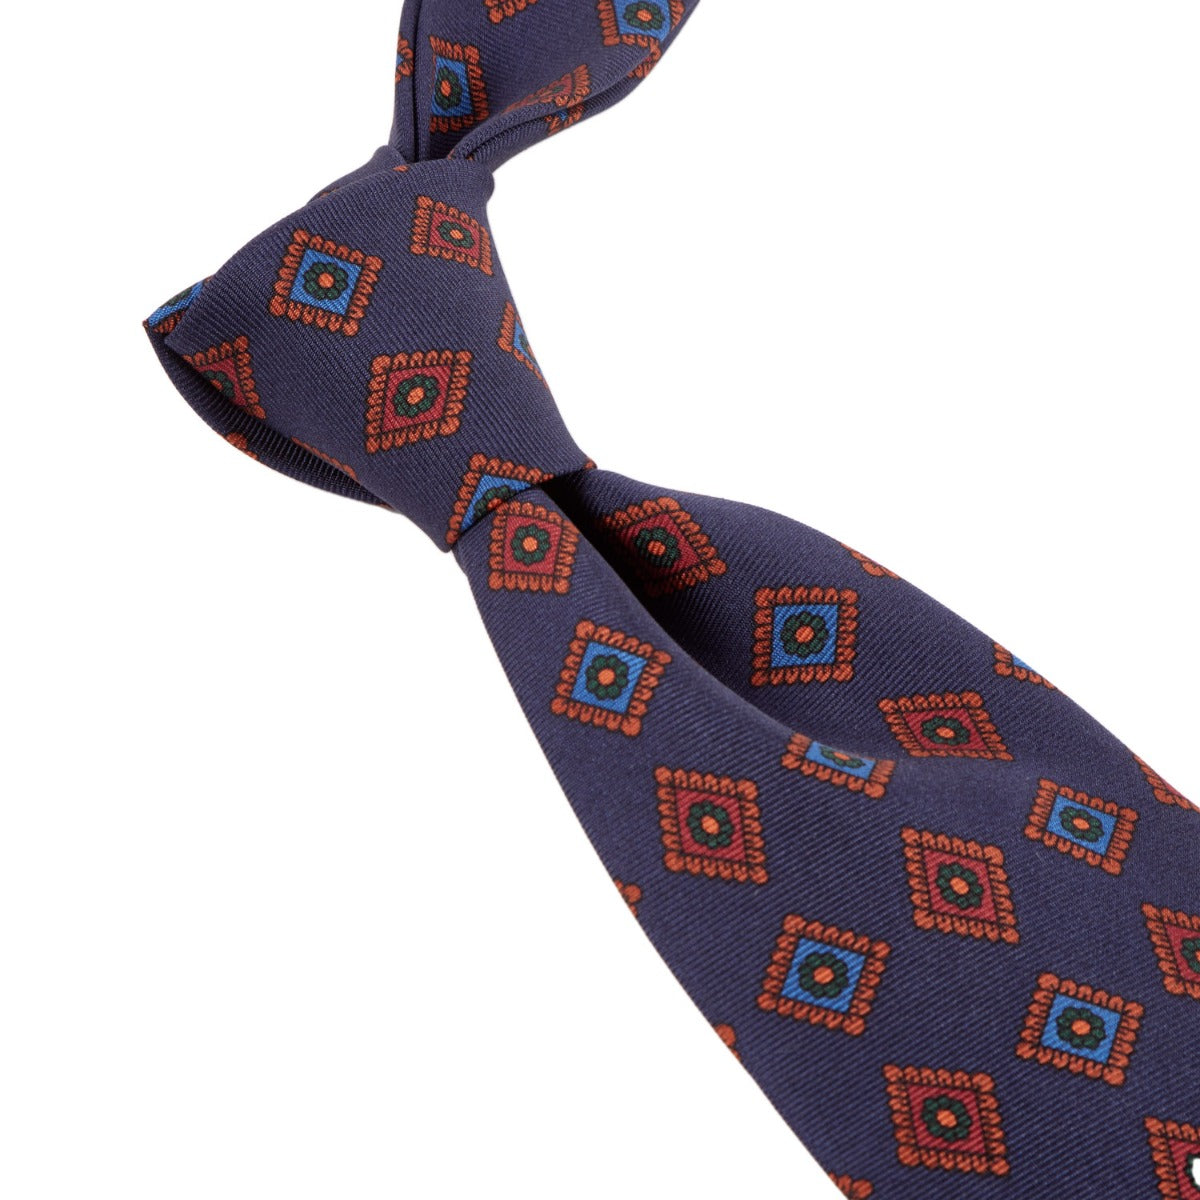 A handmade necktie with an orange and blue pattern from KirbyAllison.com's Sovereign Grade Dark Navy Art Deco Ancient Madder Silk Tie.